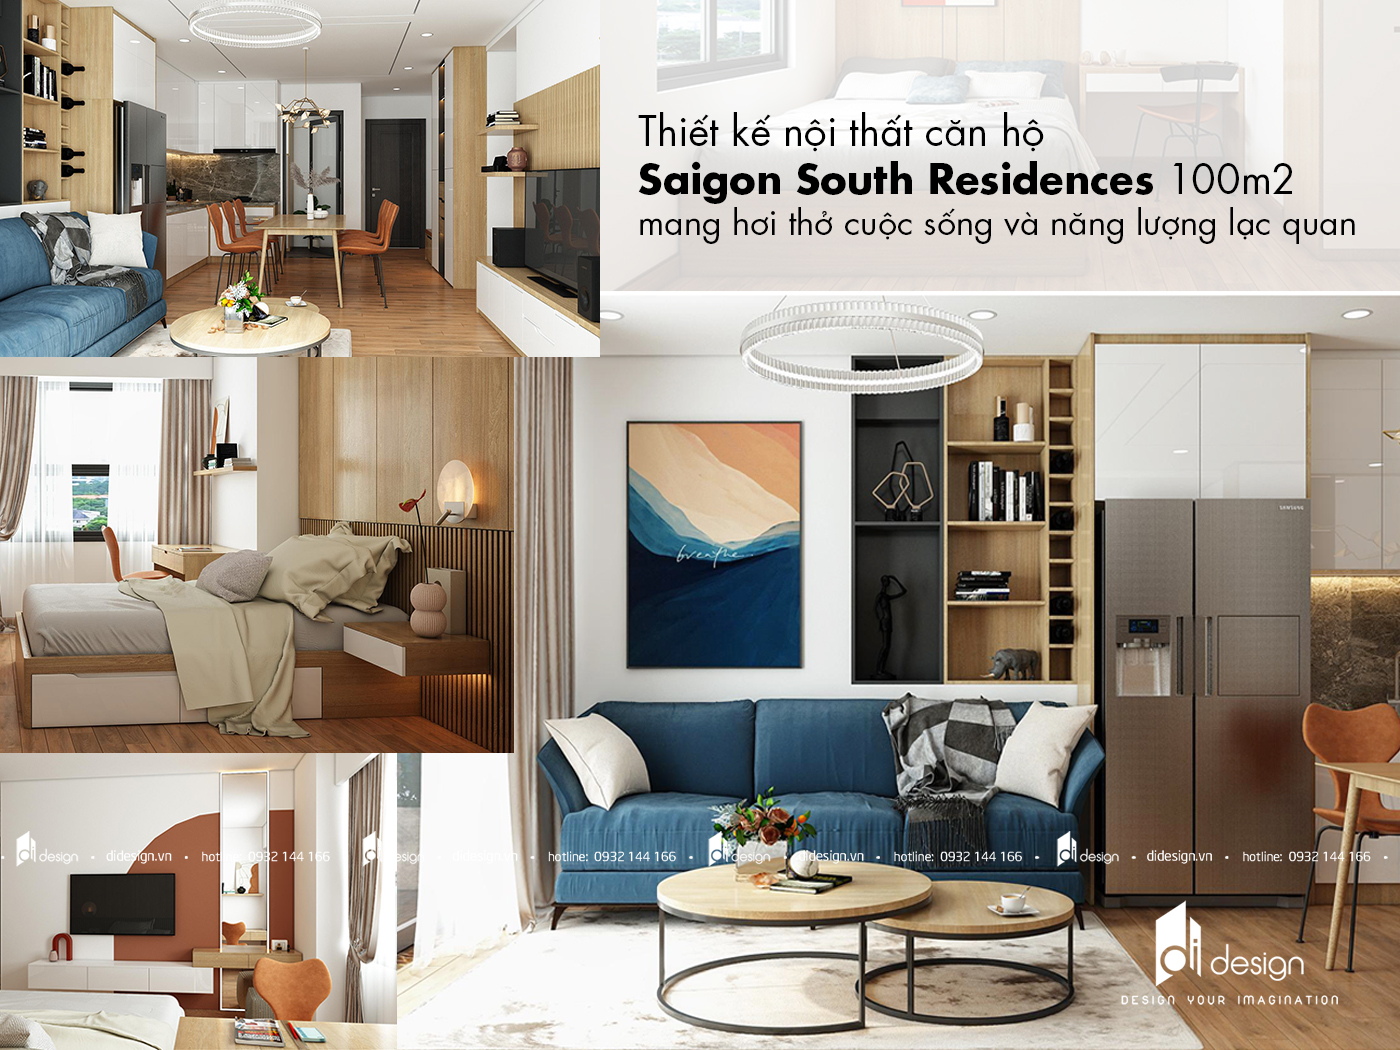 Thiết kế nội thất căn hộ Saigon South Residences 100m2 mang hơi thở cuộc sống 